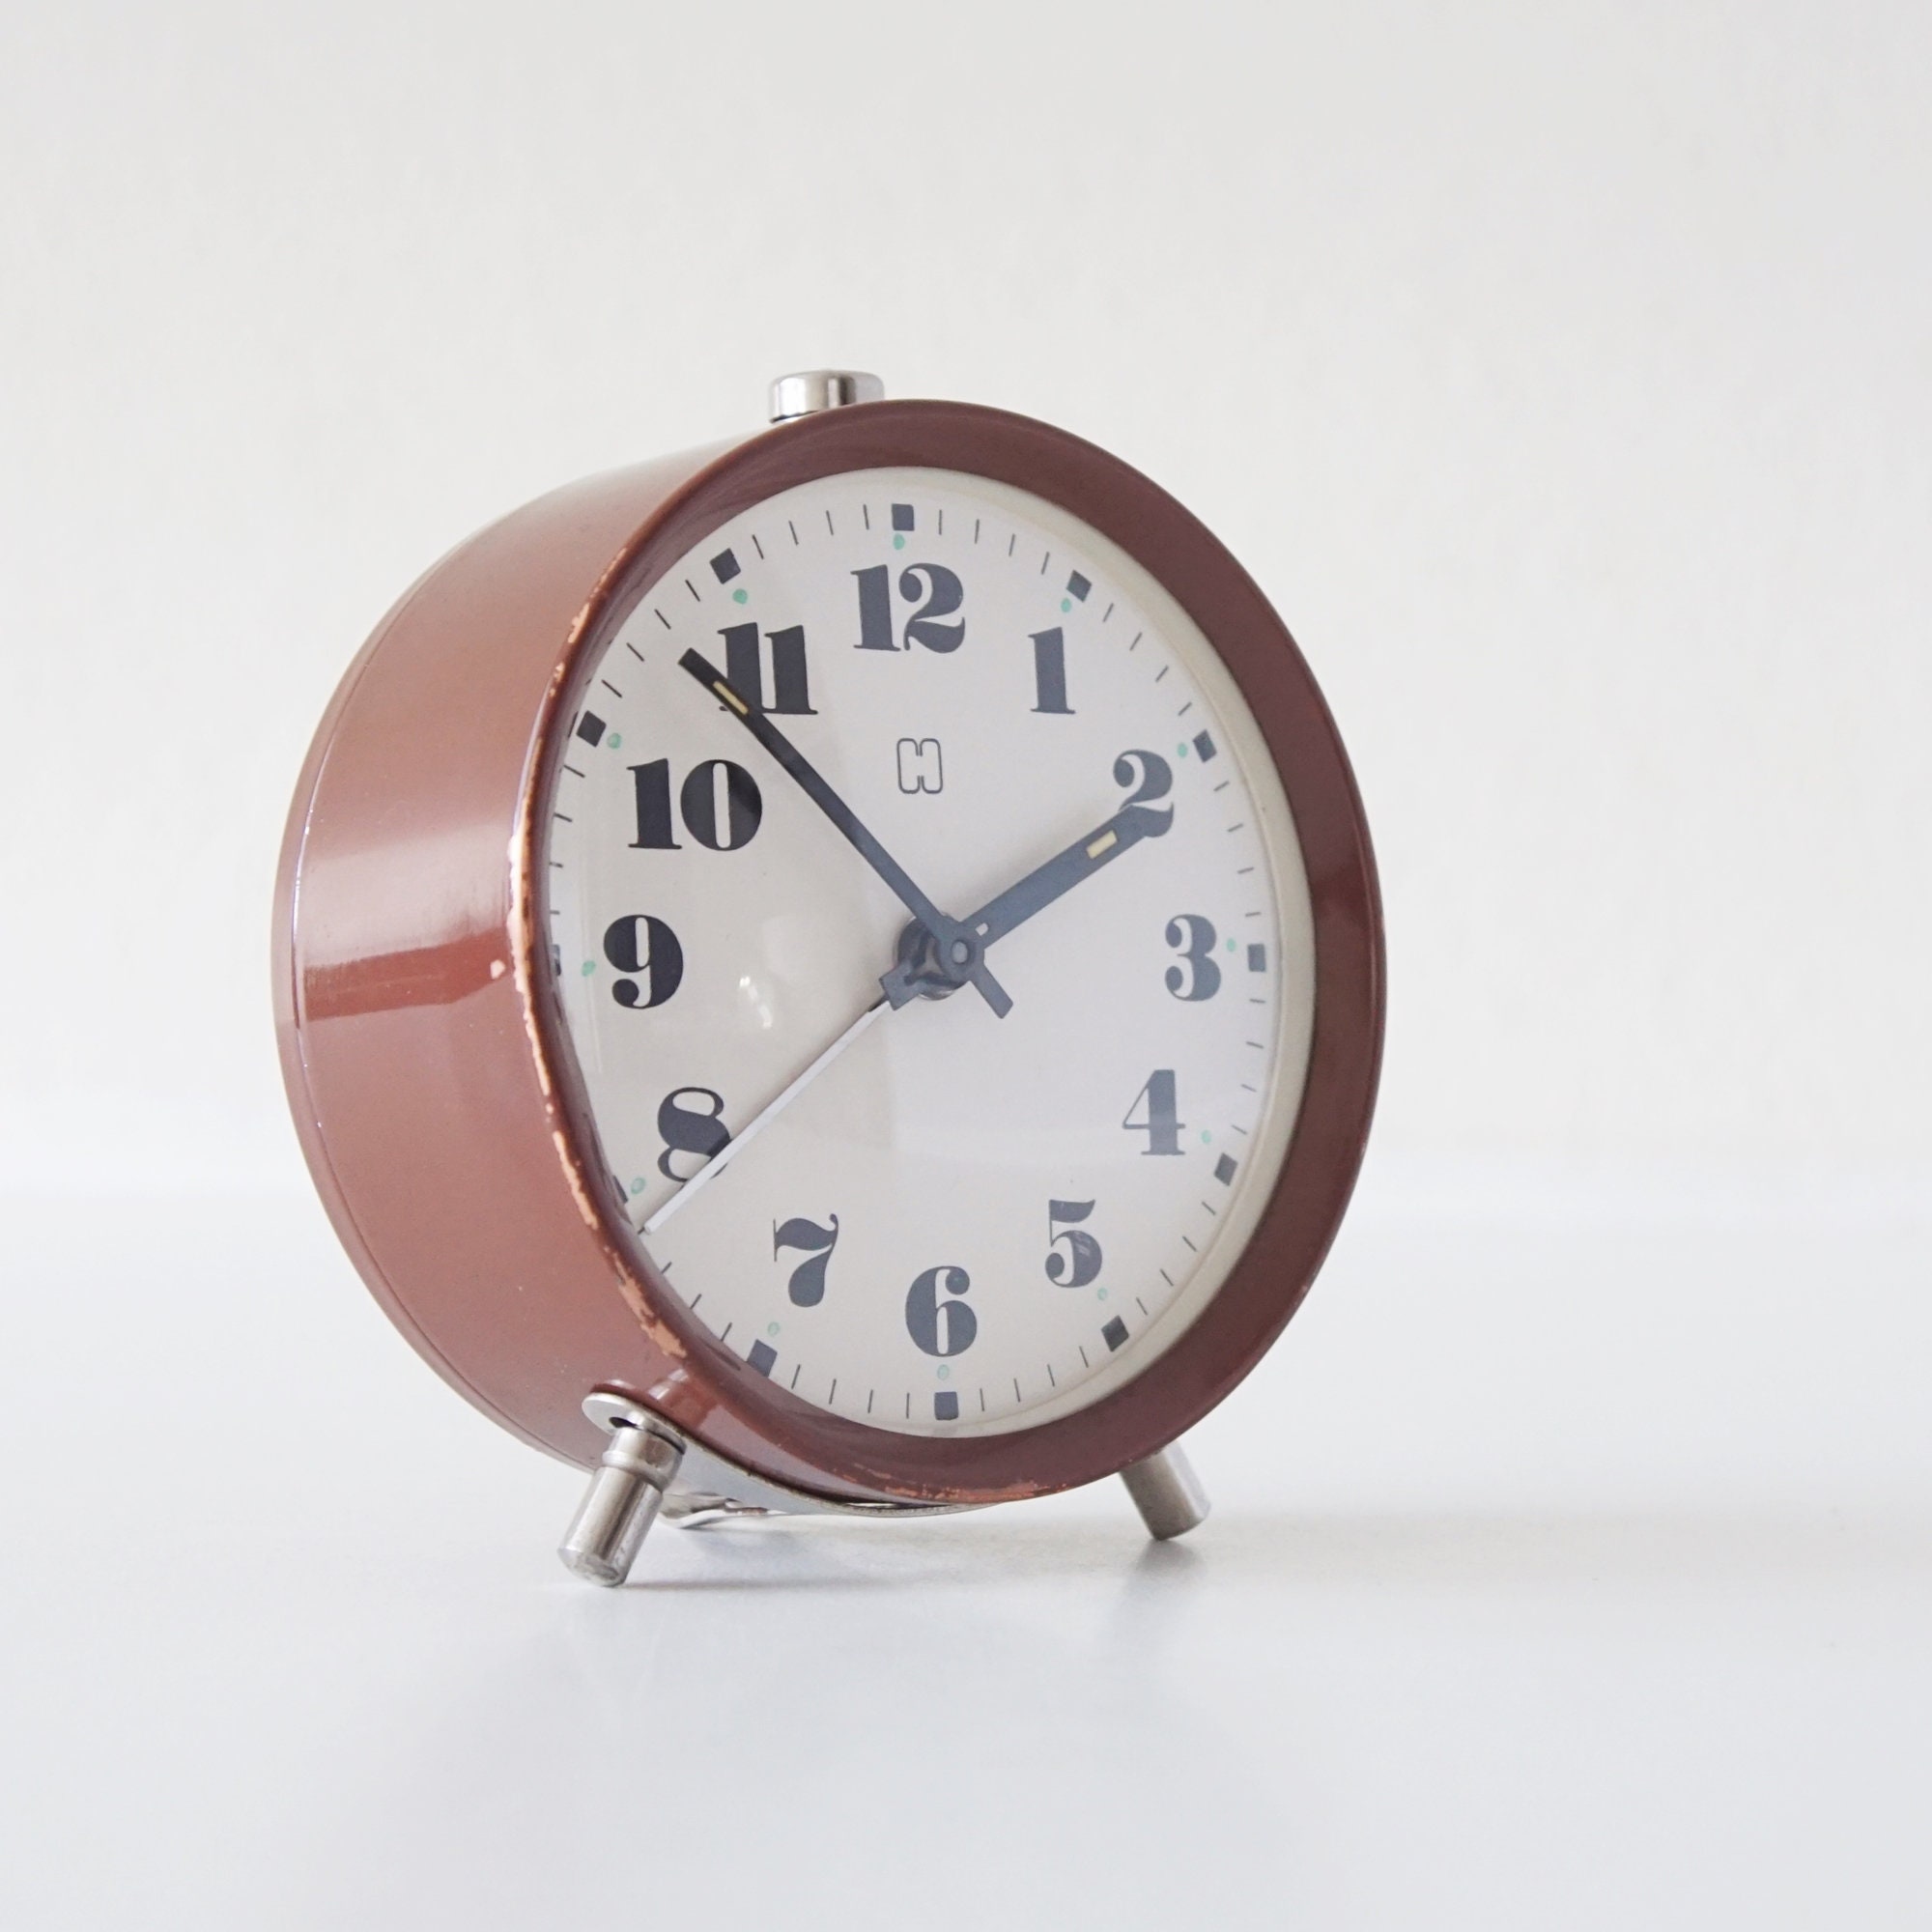 Hesje Uitsluiting Onderdrukking Brown and White Mid Century Alarm Clock by Hema Made in - Etsy